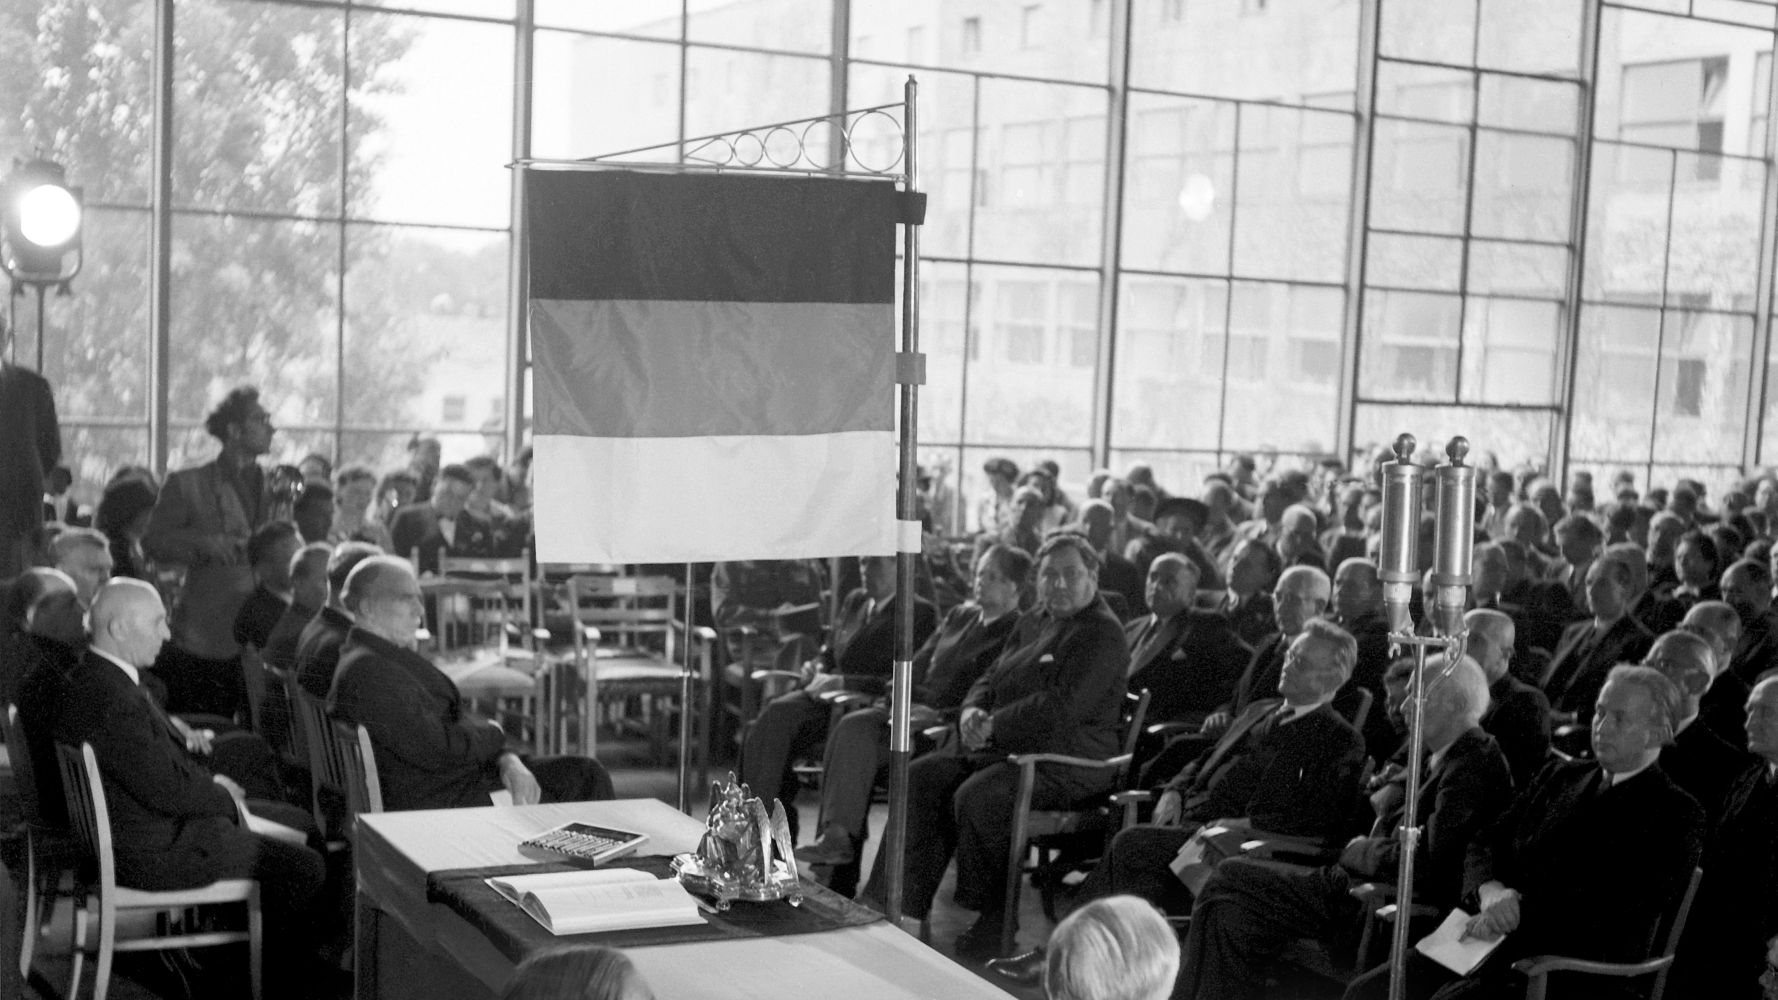 In einem vollen Saal mit großer Fensterfront sitzen viele Männer in Anzügen in Stuhlreihen. Im Vordergrund ist ein Tisch mit einer aufgeschlagenen Ausgabe des Grundgesetzes zu sehen, darüber steht eine Deutschlandflagge.